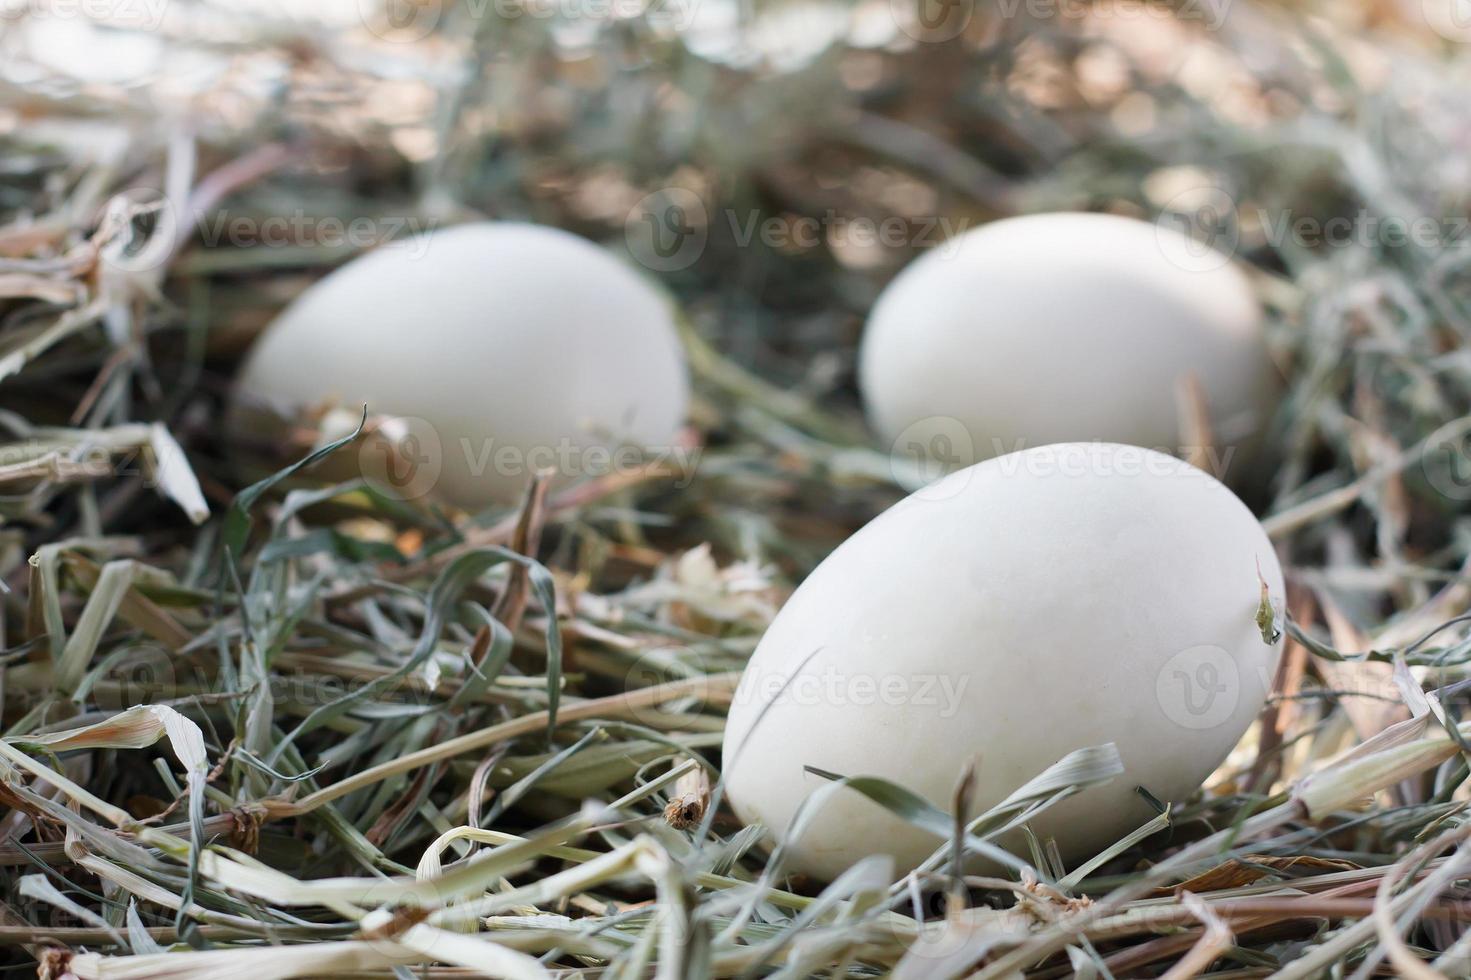 huevos en el nido foto